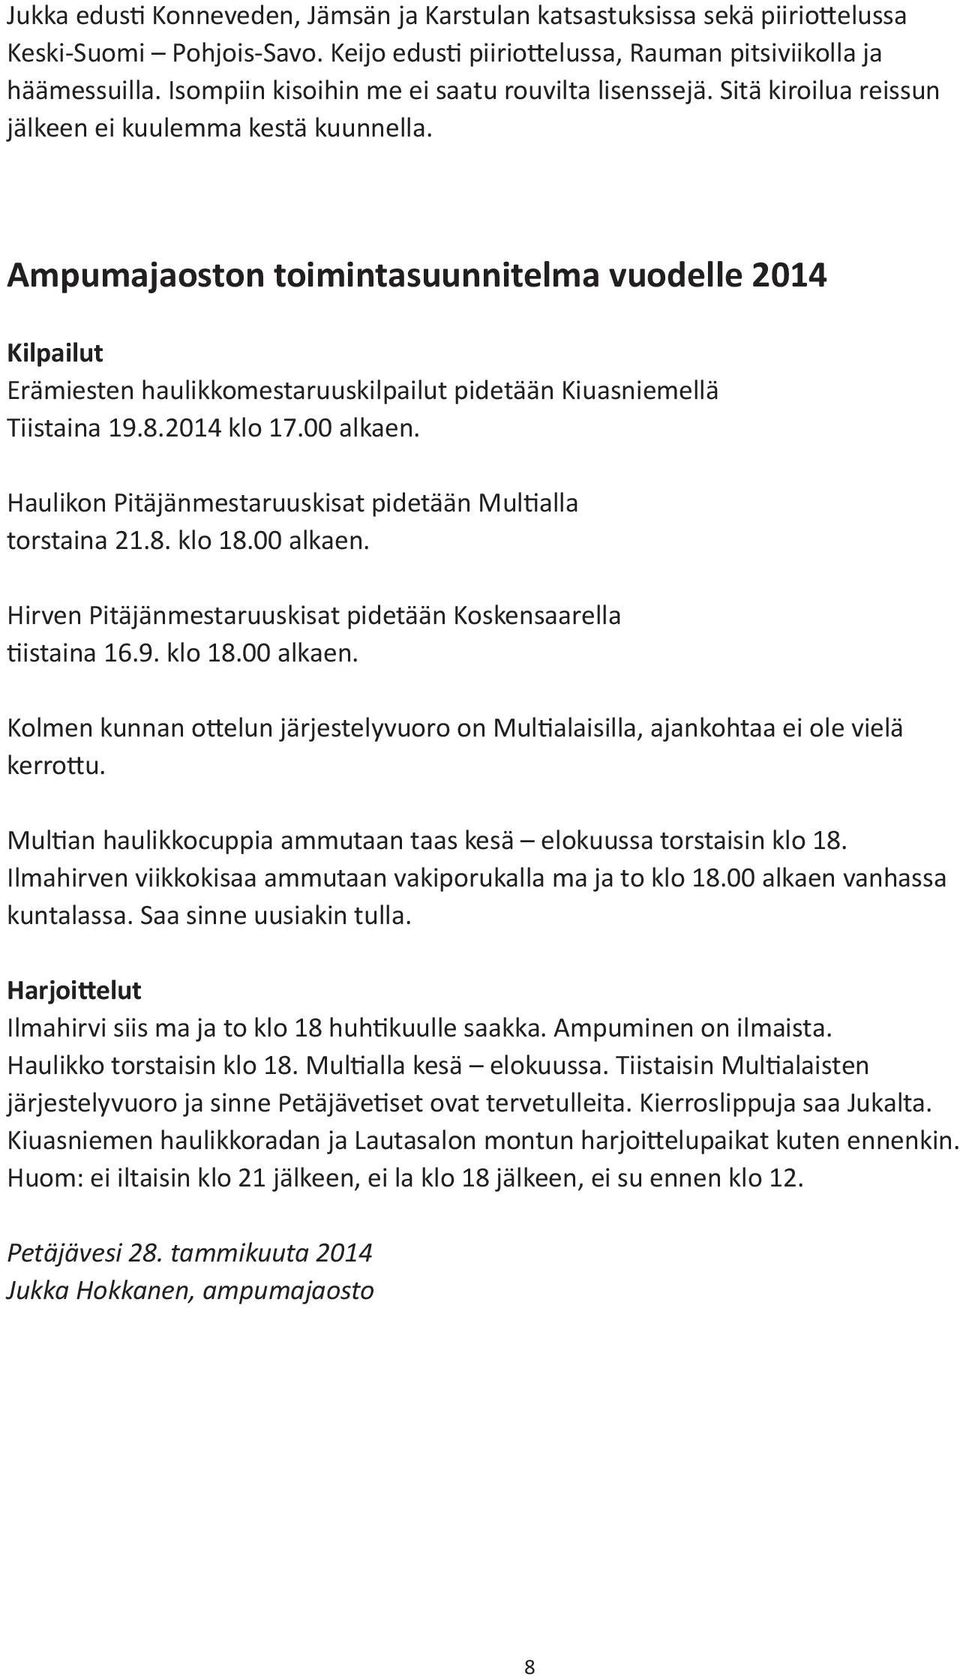 Ampumajaoston toimintasuunnitelma vuodelle 214 Kilpailut Erämiesten haulikkomestaruuskilpailut pidetään Kiuasniemellä Tiistaina 19.8.214 klo 17. alkaen.